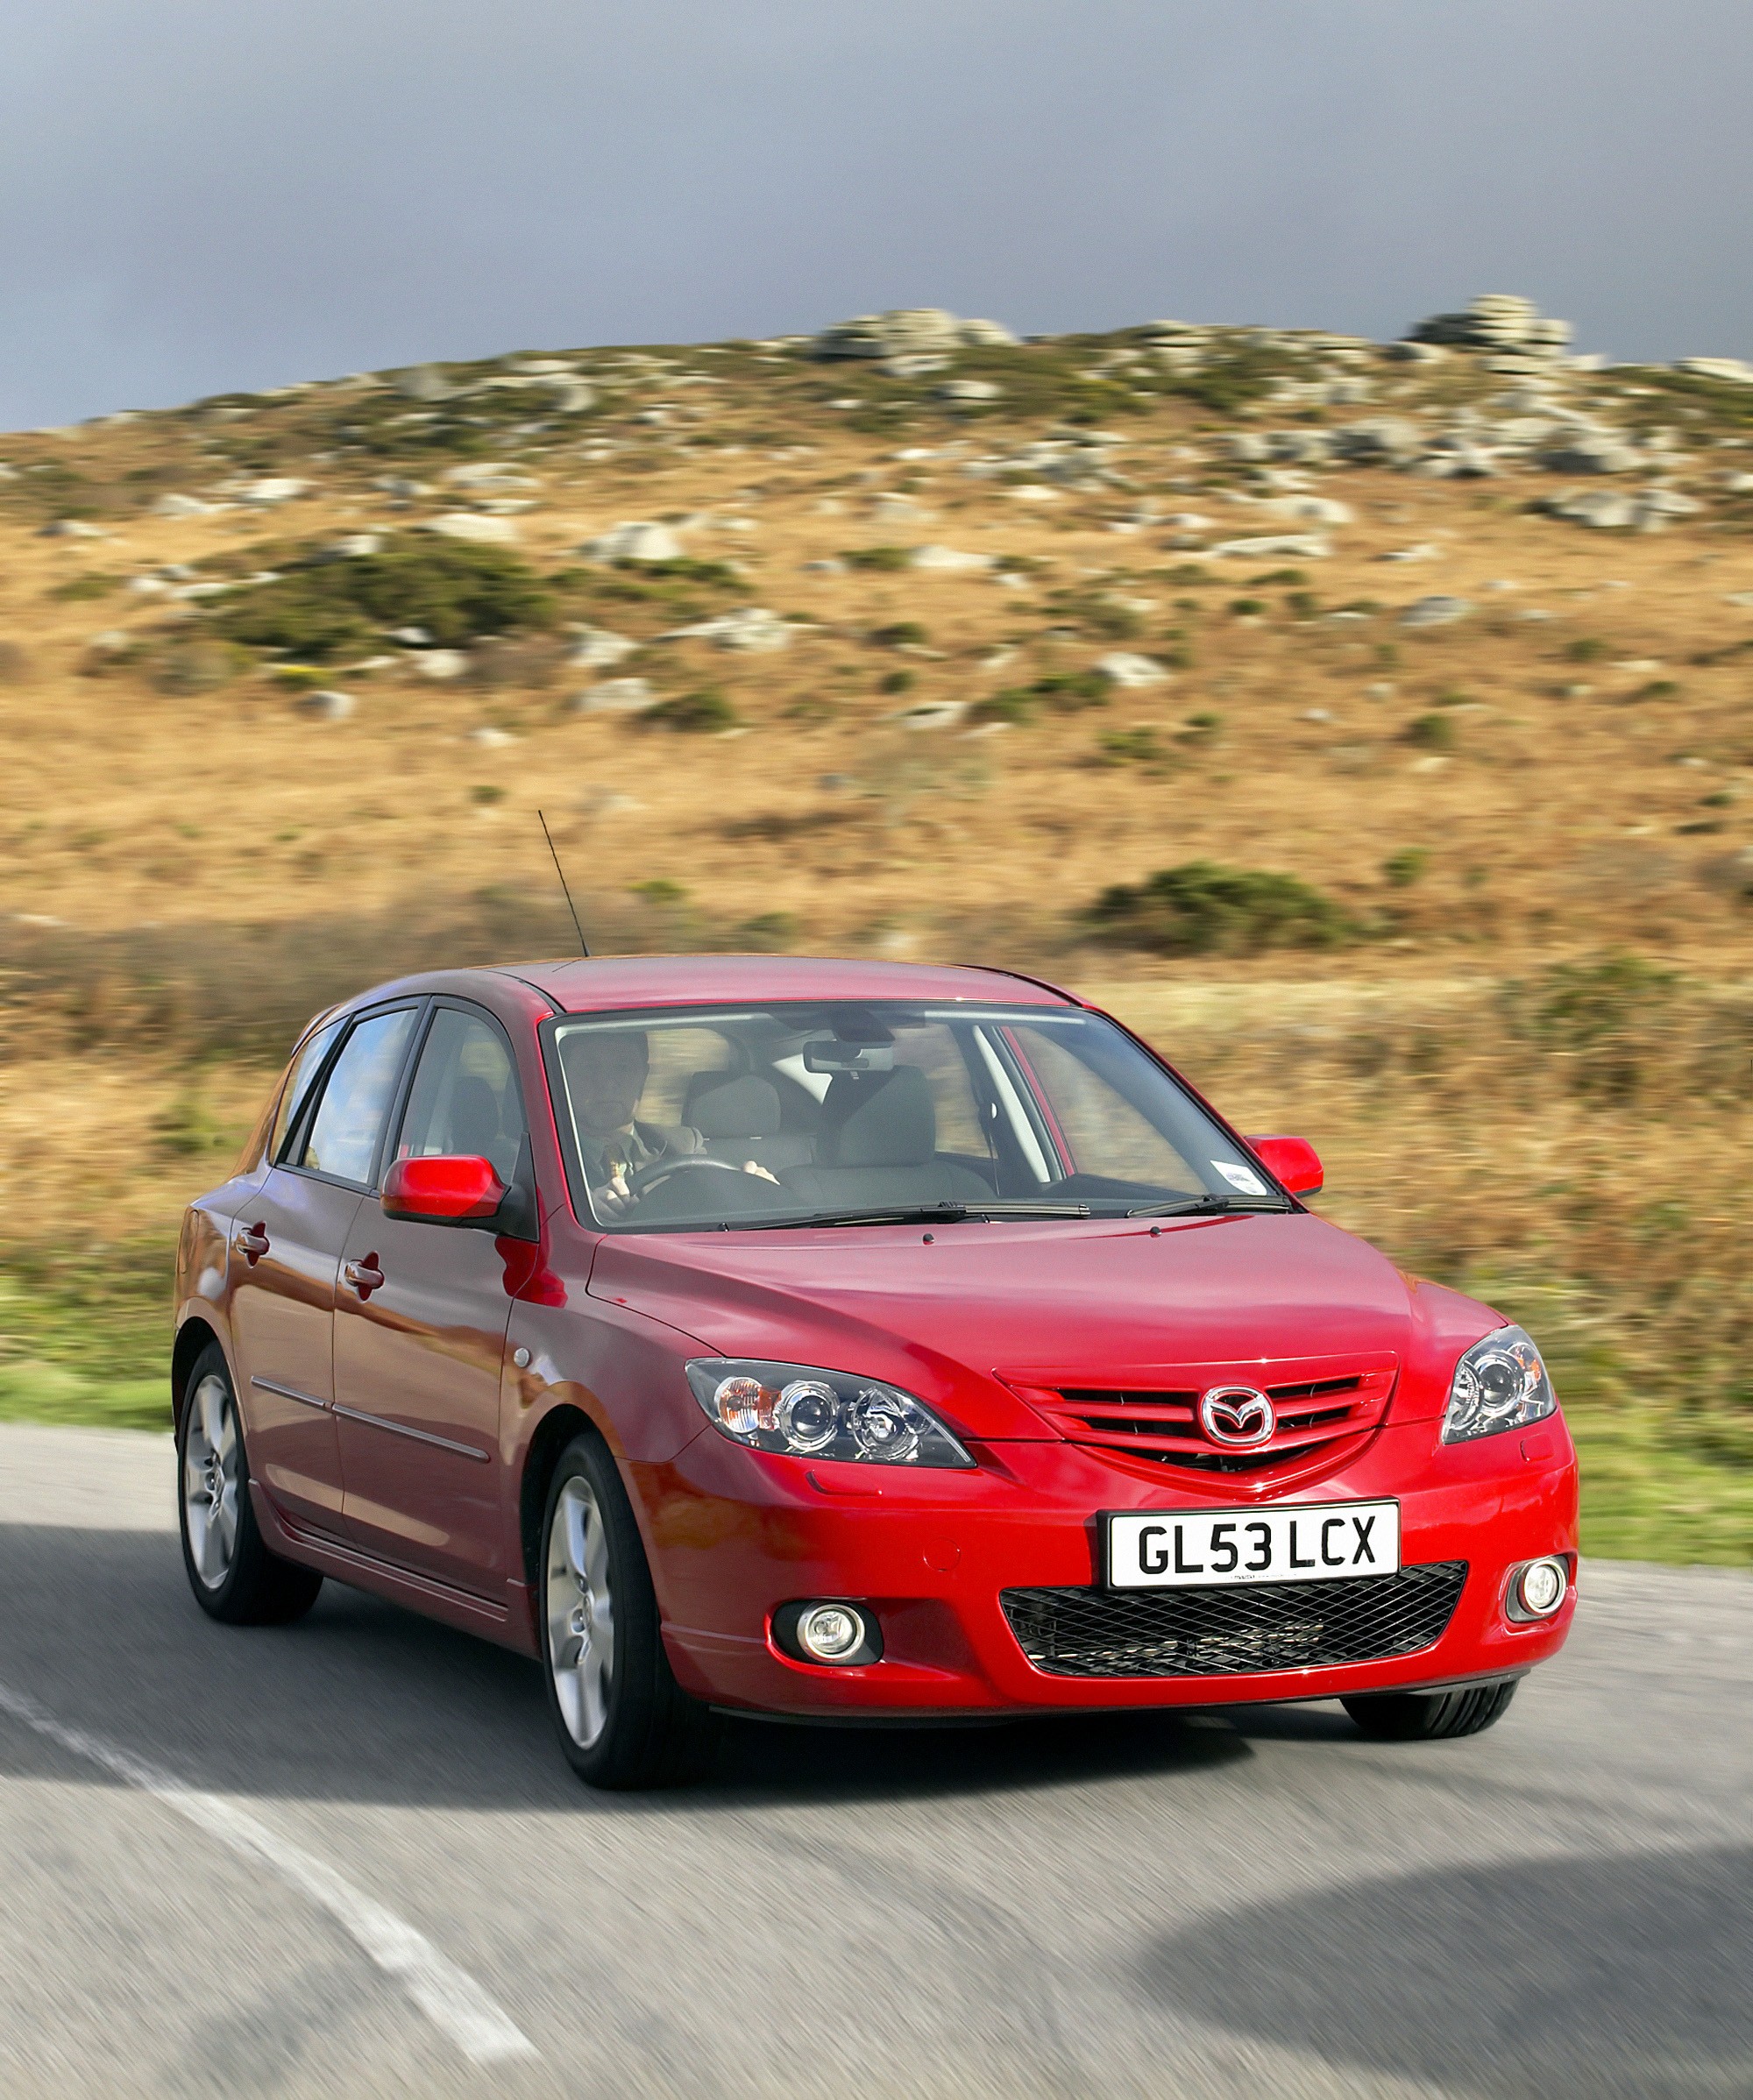 Mazda Mazda3 Hatchback exterior model